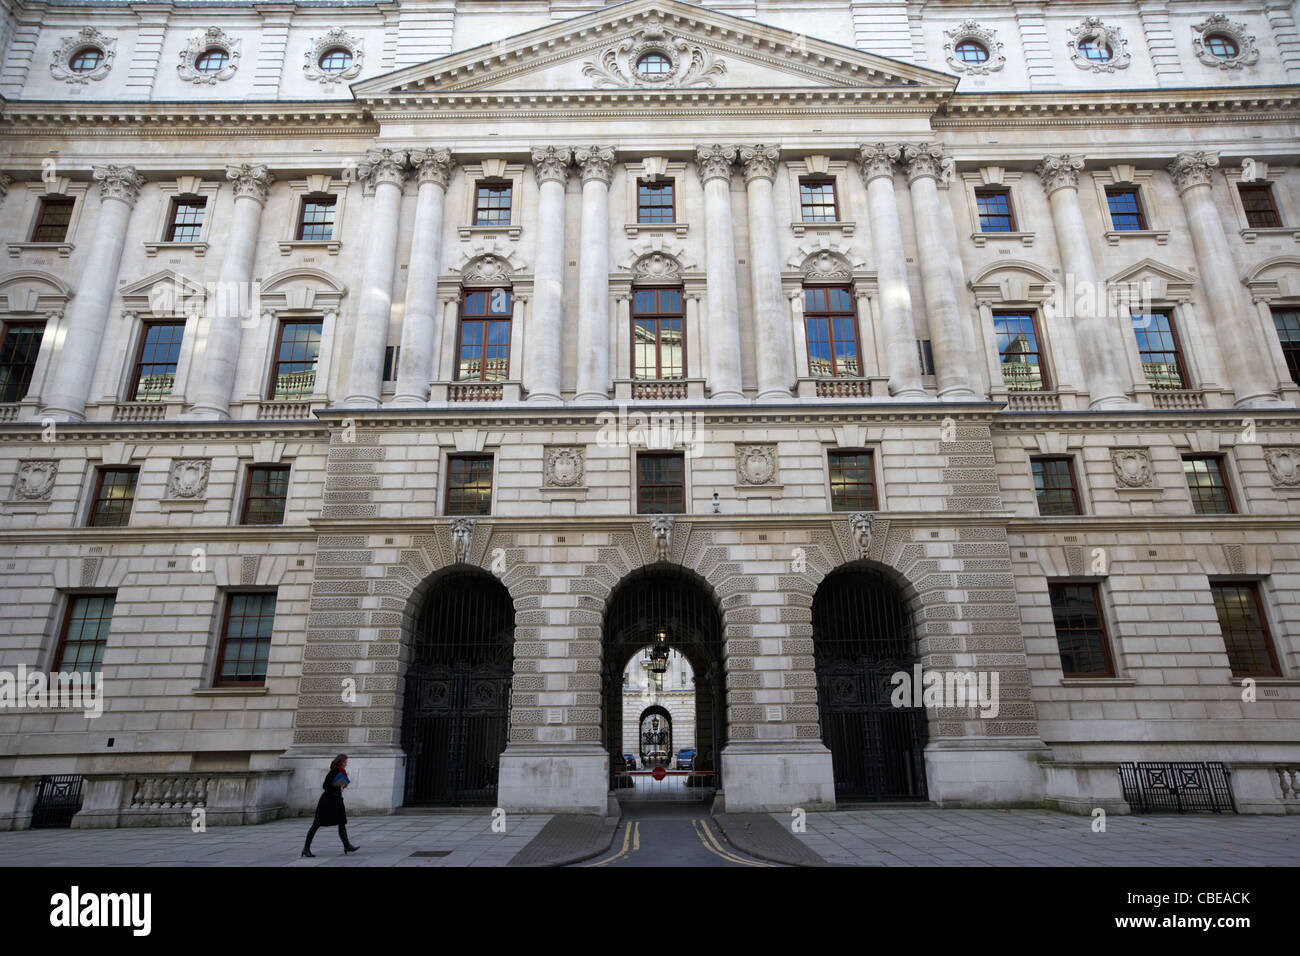 HM Einnahmen und Zoll- und hm Treasury britische Regierung offizielle Gebäude Whitehall London England Vereinigtes Königreich Großbritannien Stockfoto